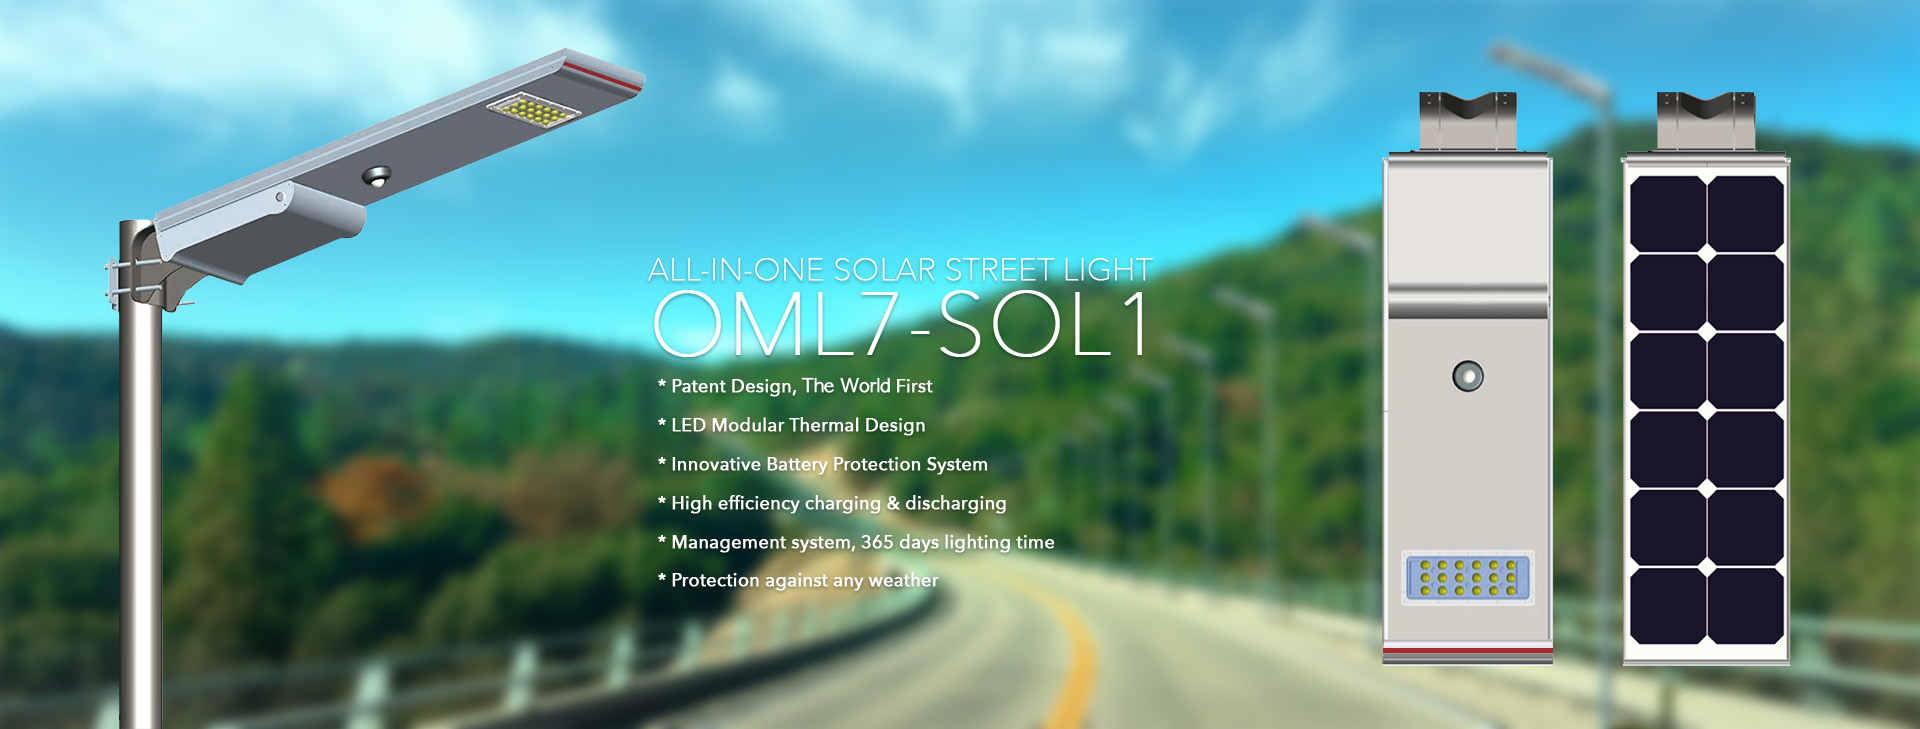 OML7-SOL1